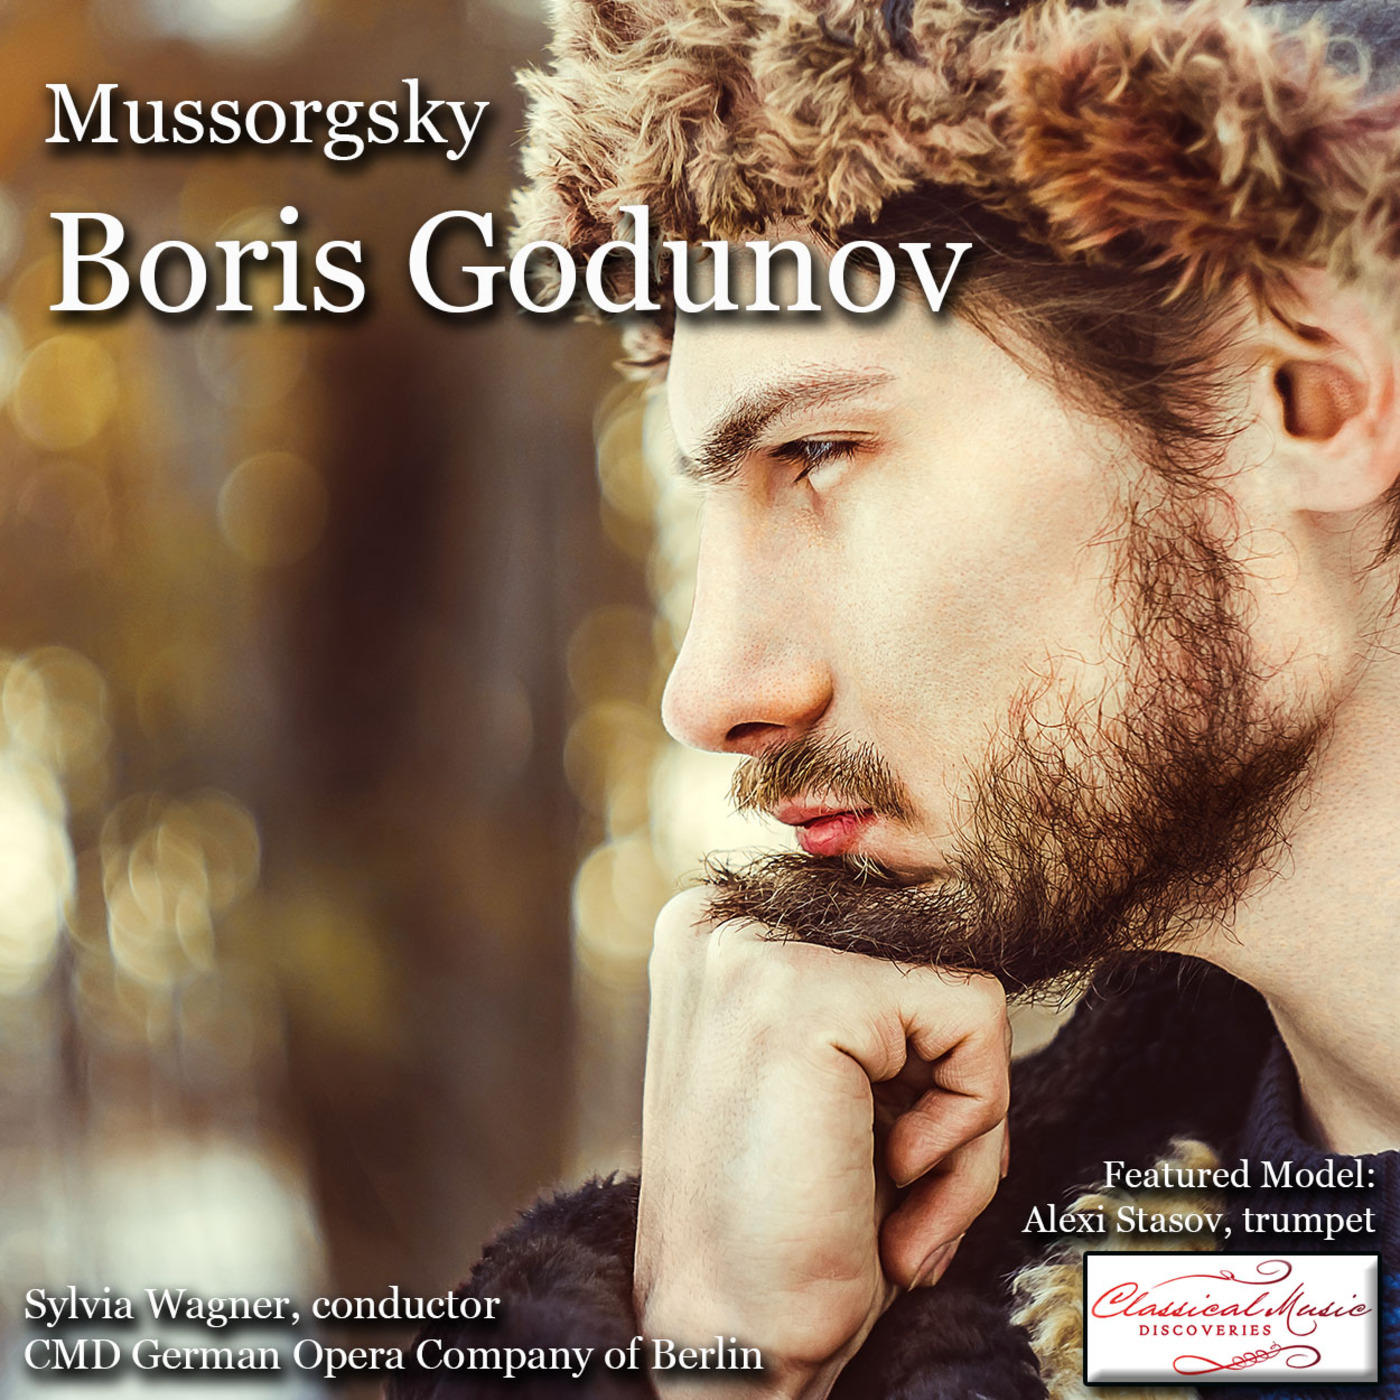 Episode 125: 17125 Mussorgsky: Boris Godunov